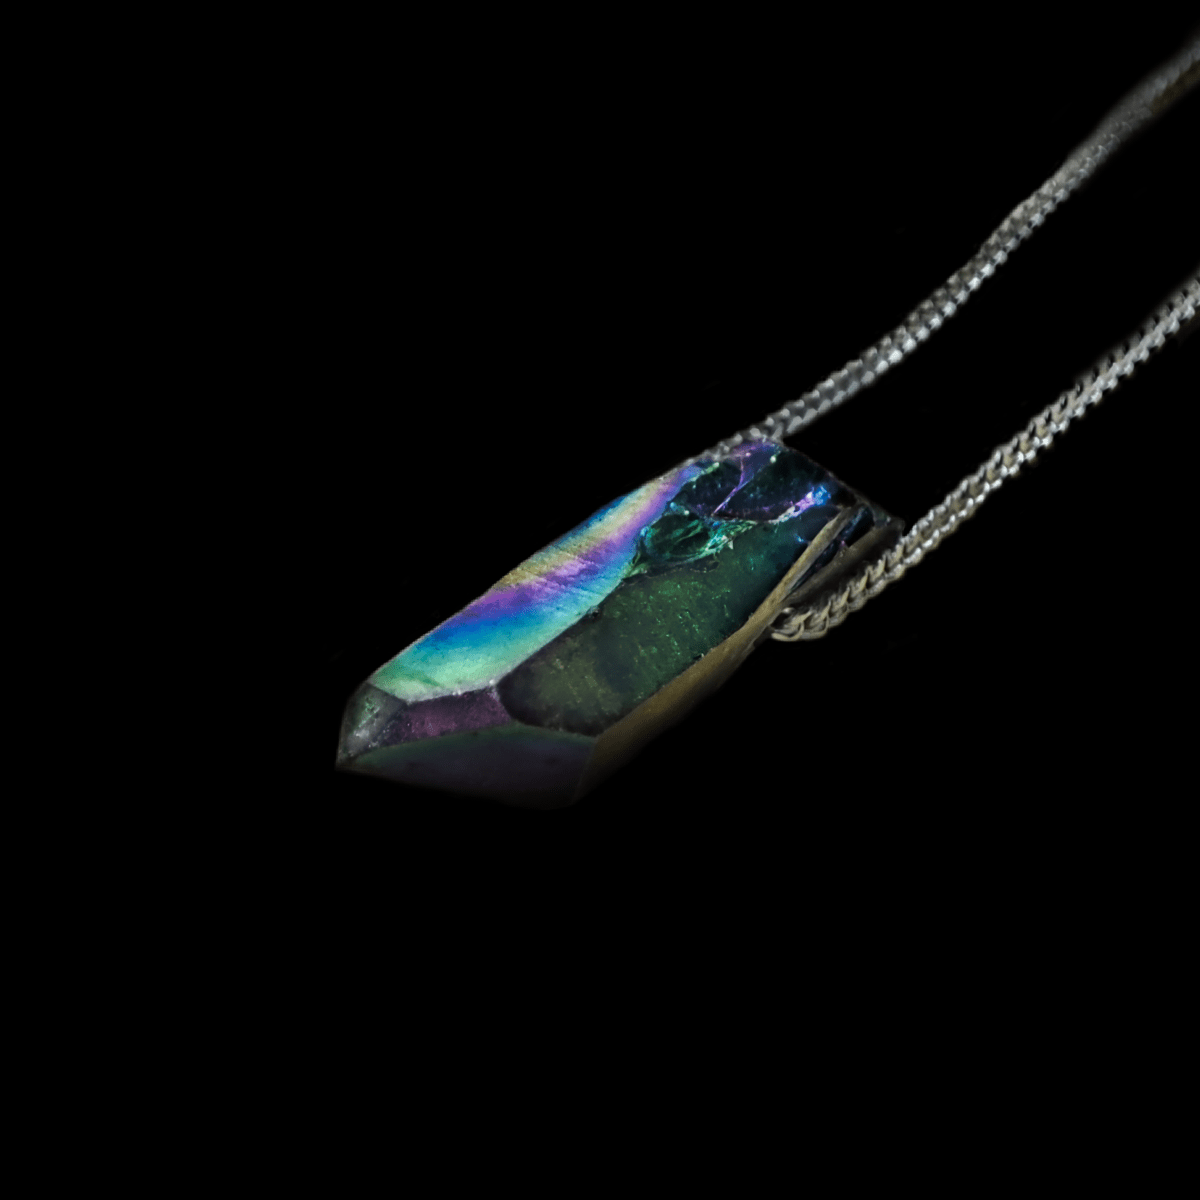 Angel Aura Spitzenanhänger Makro Aufnahme an einer 925 Silber Kette. Angel Aura Kristalle sind mit Eisen beschichtete Kristalle, welche wie auf diesem Foto in Regenbogenfarben erstrahlen.